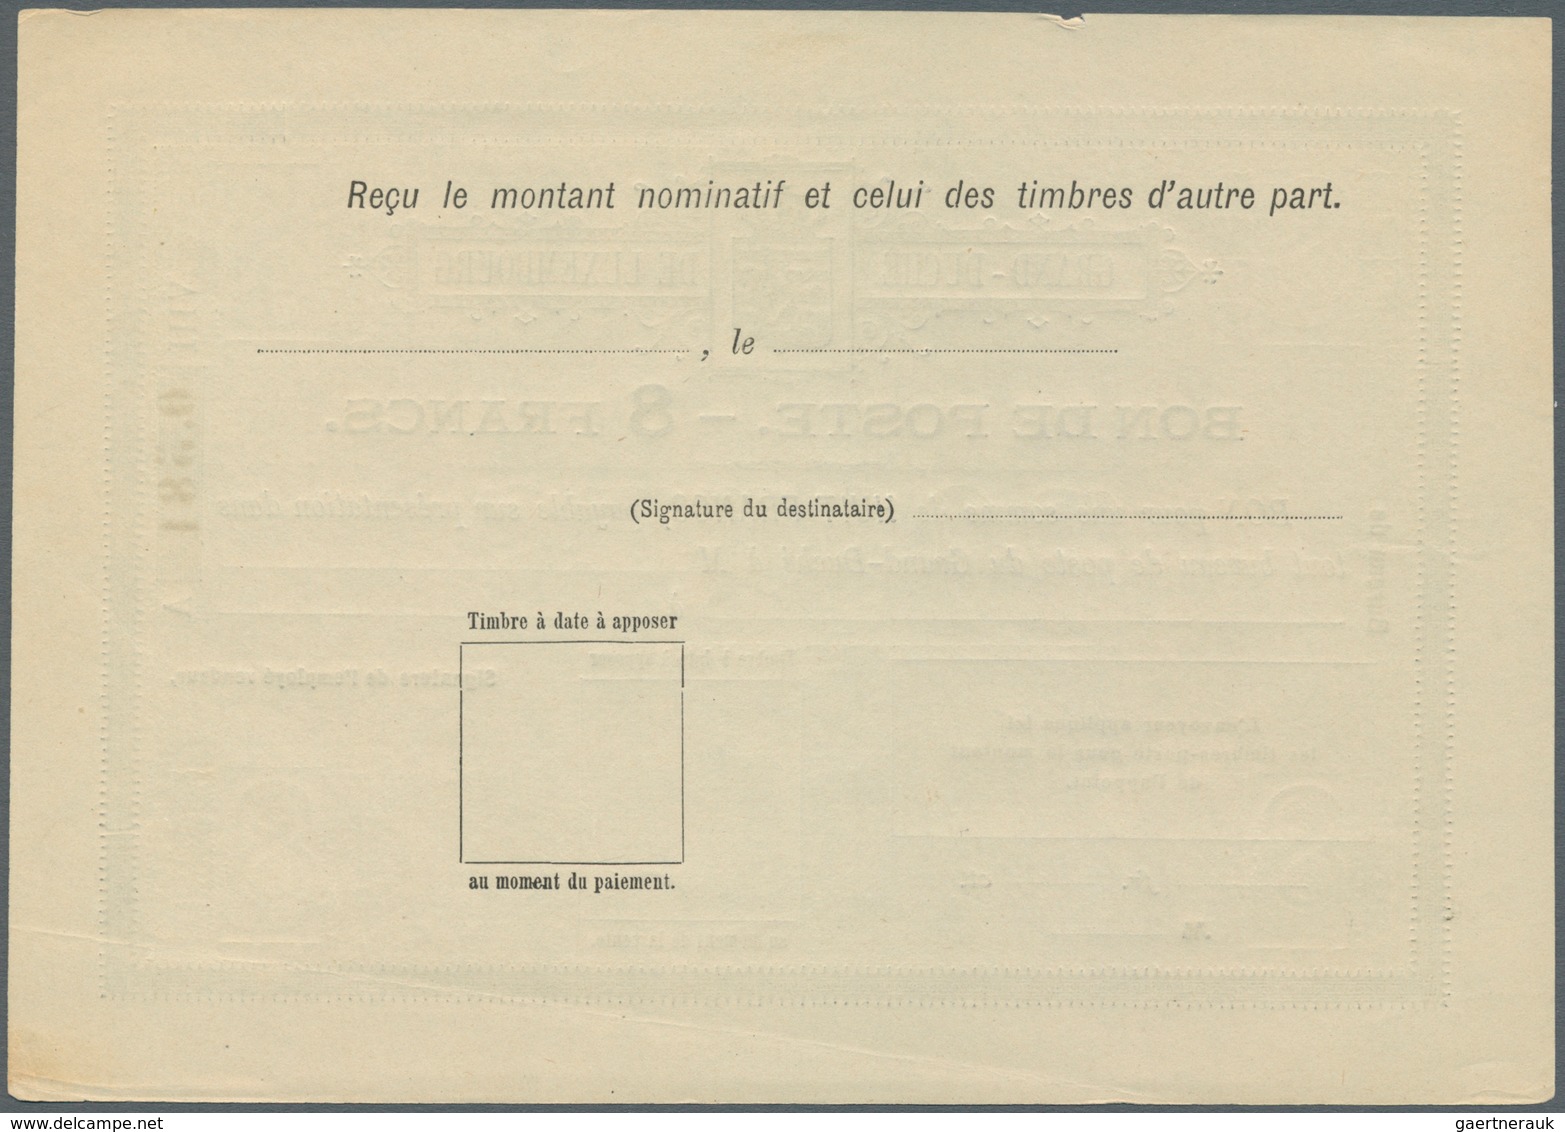 15151 Luxemburg - Ganzsachen: 1884, 1 fr. - 10 fr. Bon de Poste, complete set with ten pieces, unused, mos